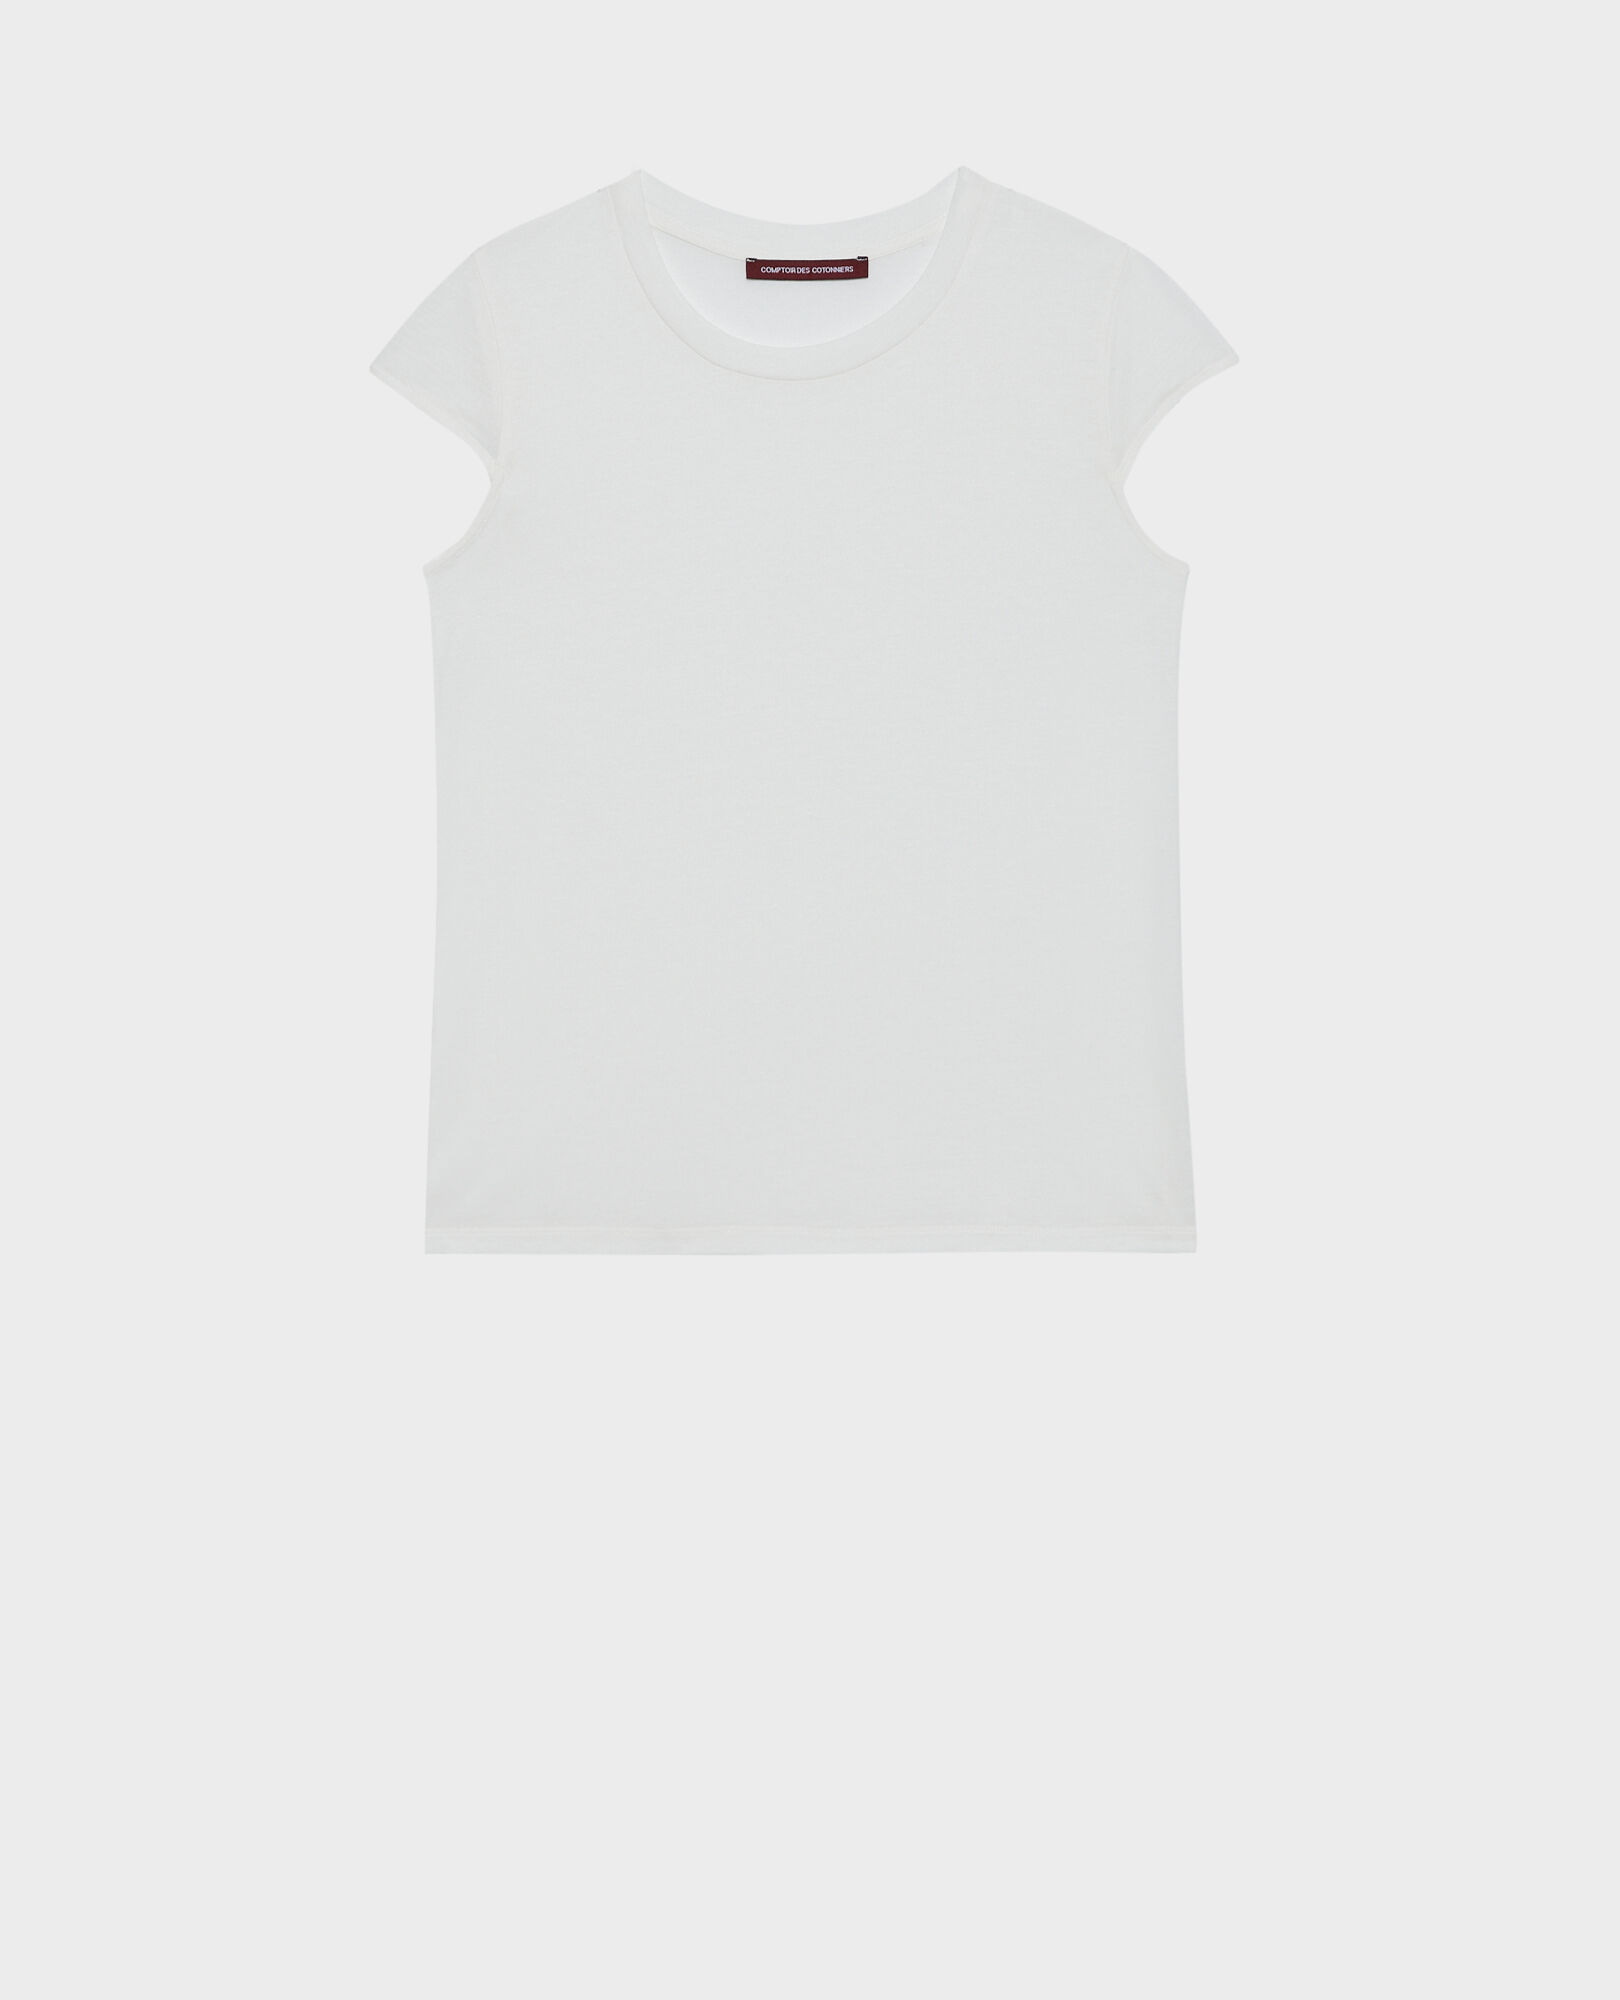 MANON – T-Shirt mit Rundhalsausschnitt aus gemischter Baumwolle 06 gray 2ste068c14